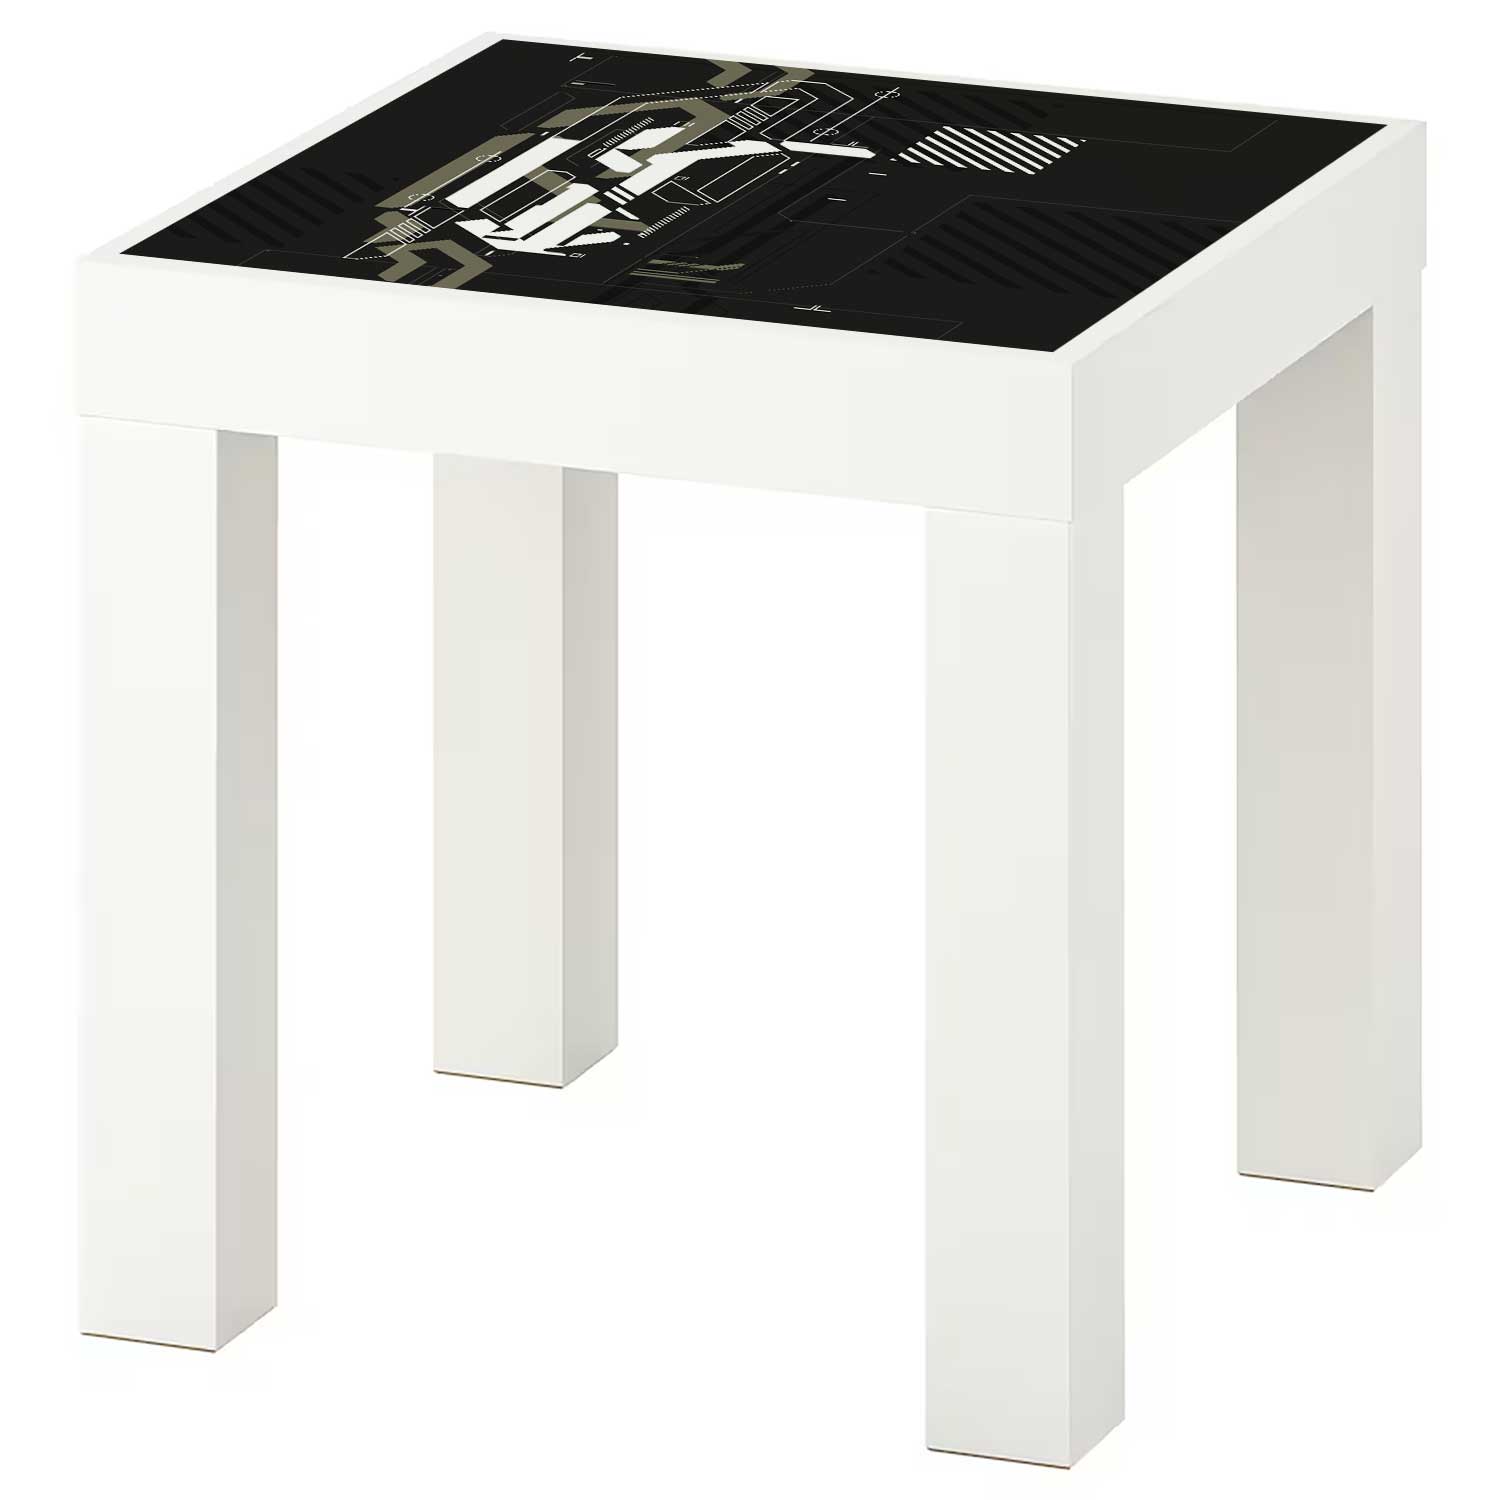 Möbelfolie für IKEA Lack Tisch 35x35 cm 'Warzone'